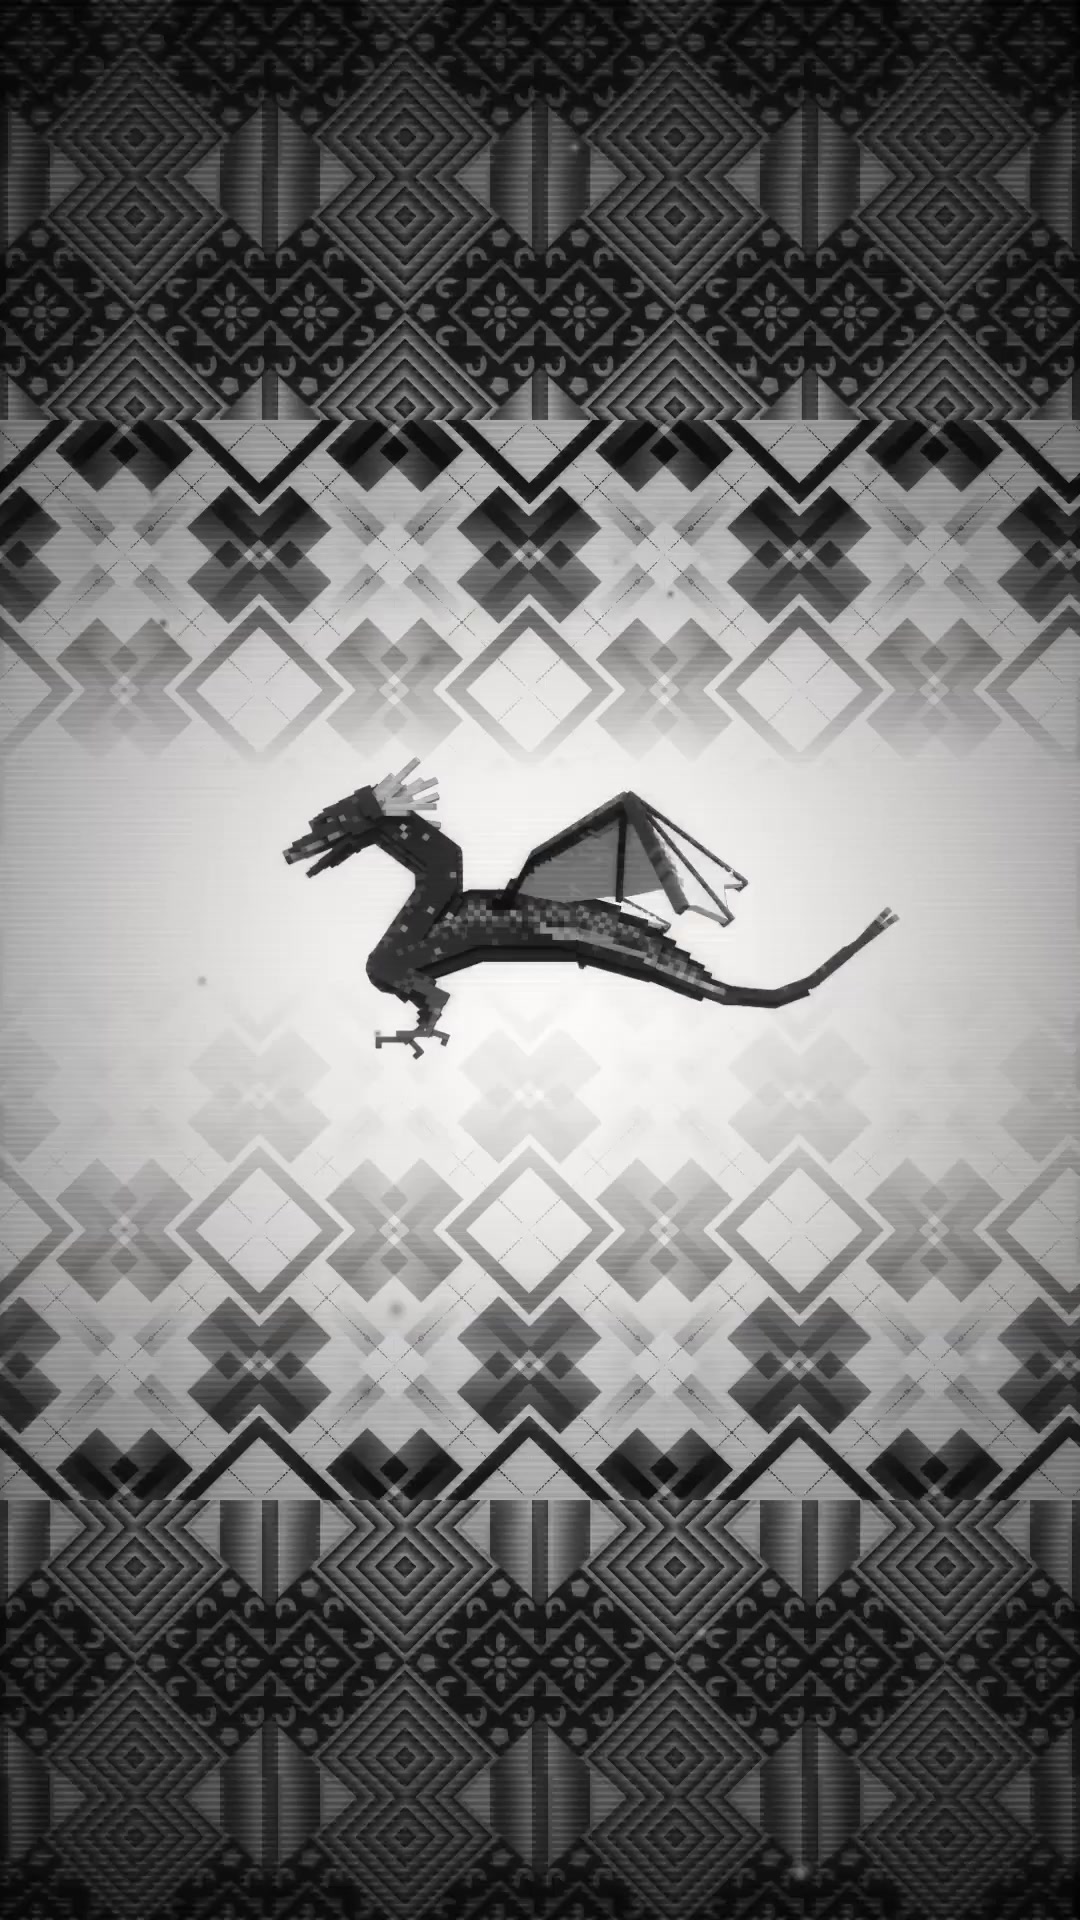 Monochrome Dragon